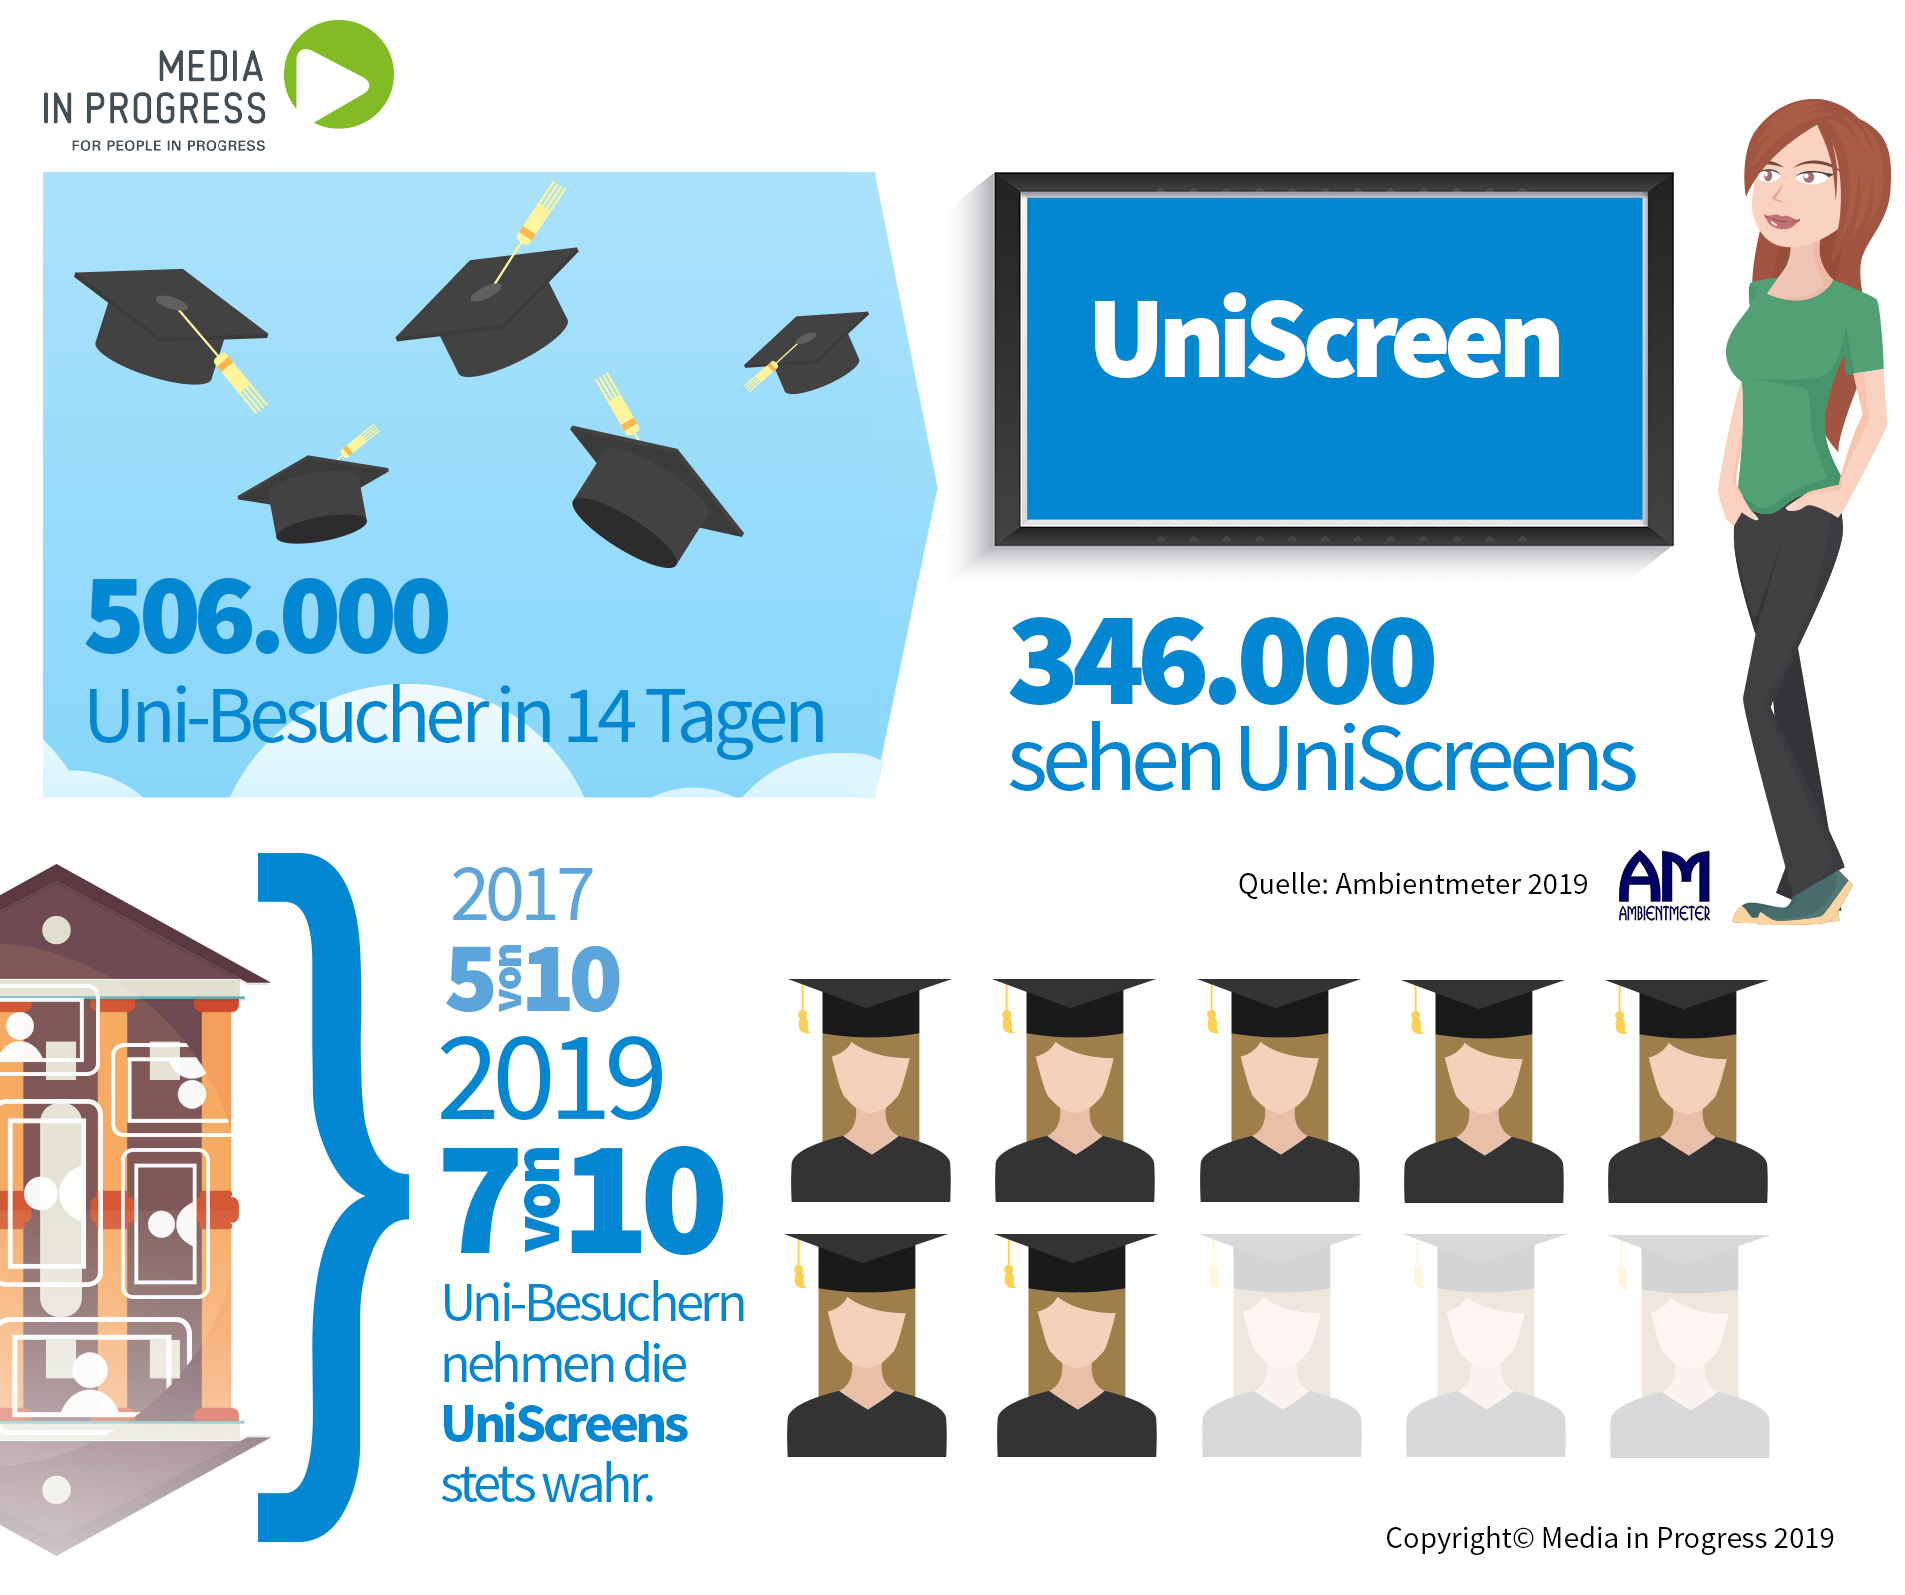 DIe UniScreens werden jetzt noch deutlicher wahrgenommen: Knapp 7te Uni-Besucher nimmt sie stets bewusst war - das sind 346.000 Personen in 14 Tagen. Media in Progress ist Österreichs beste Medien-Agentur für Werbung an der Uni & an FHs.